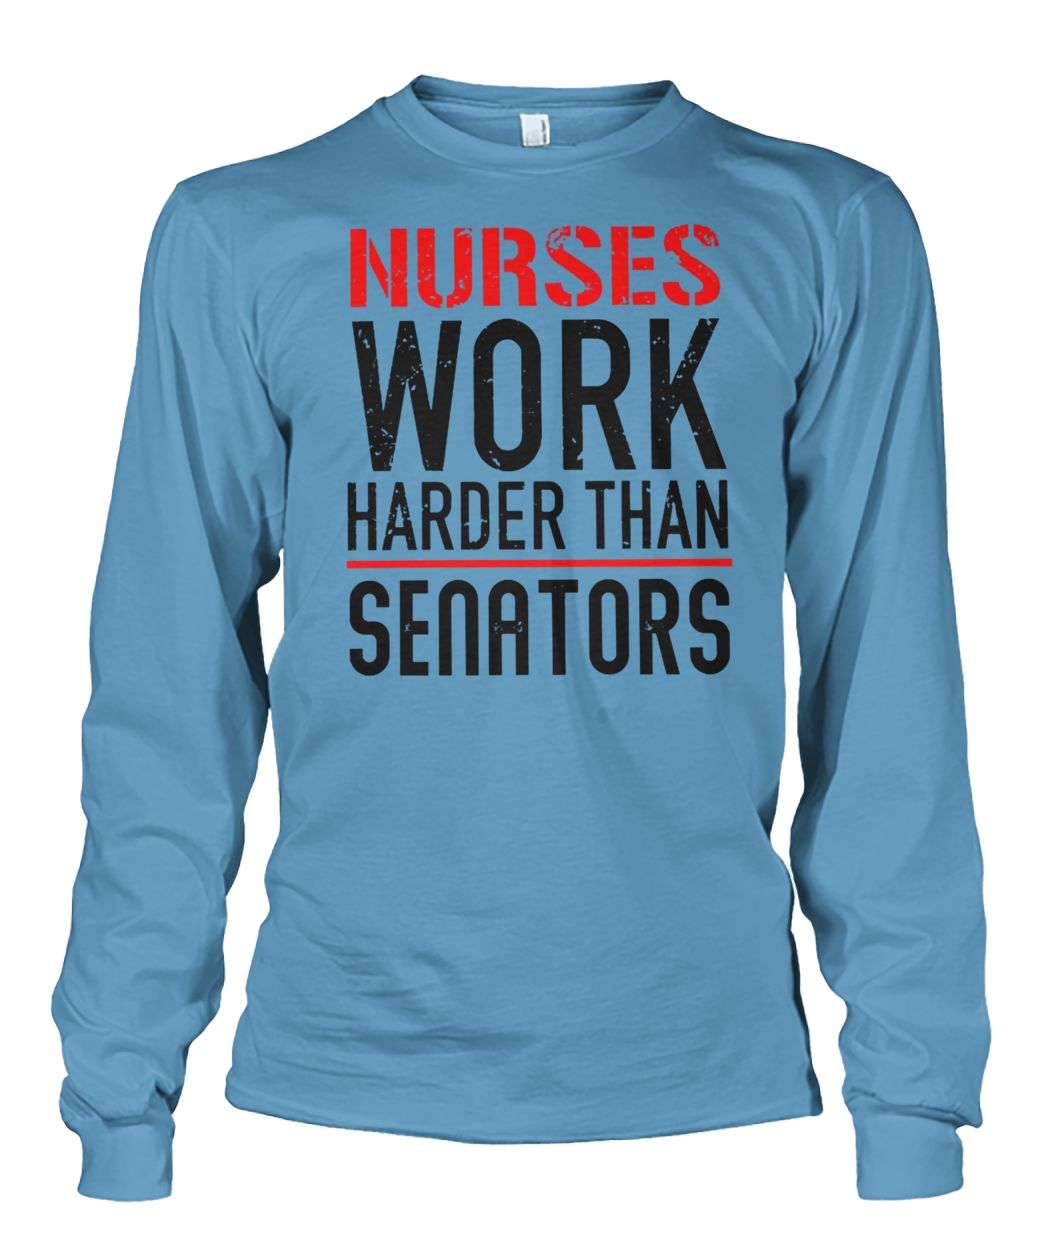 Nurses work harder than senators unisex long sleeve